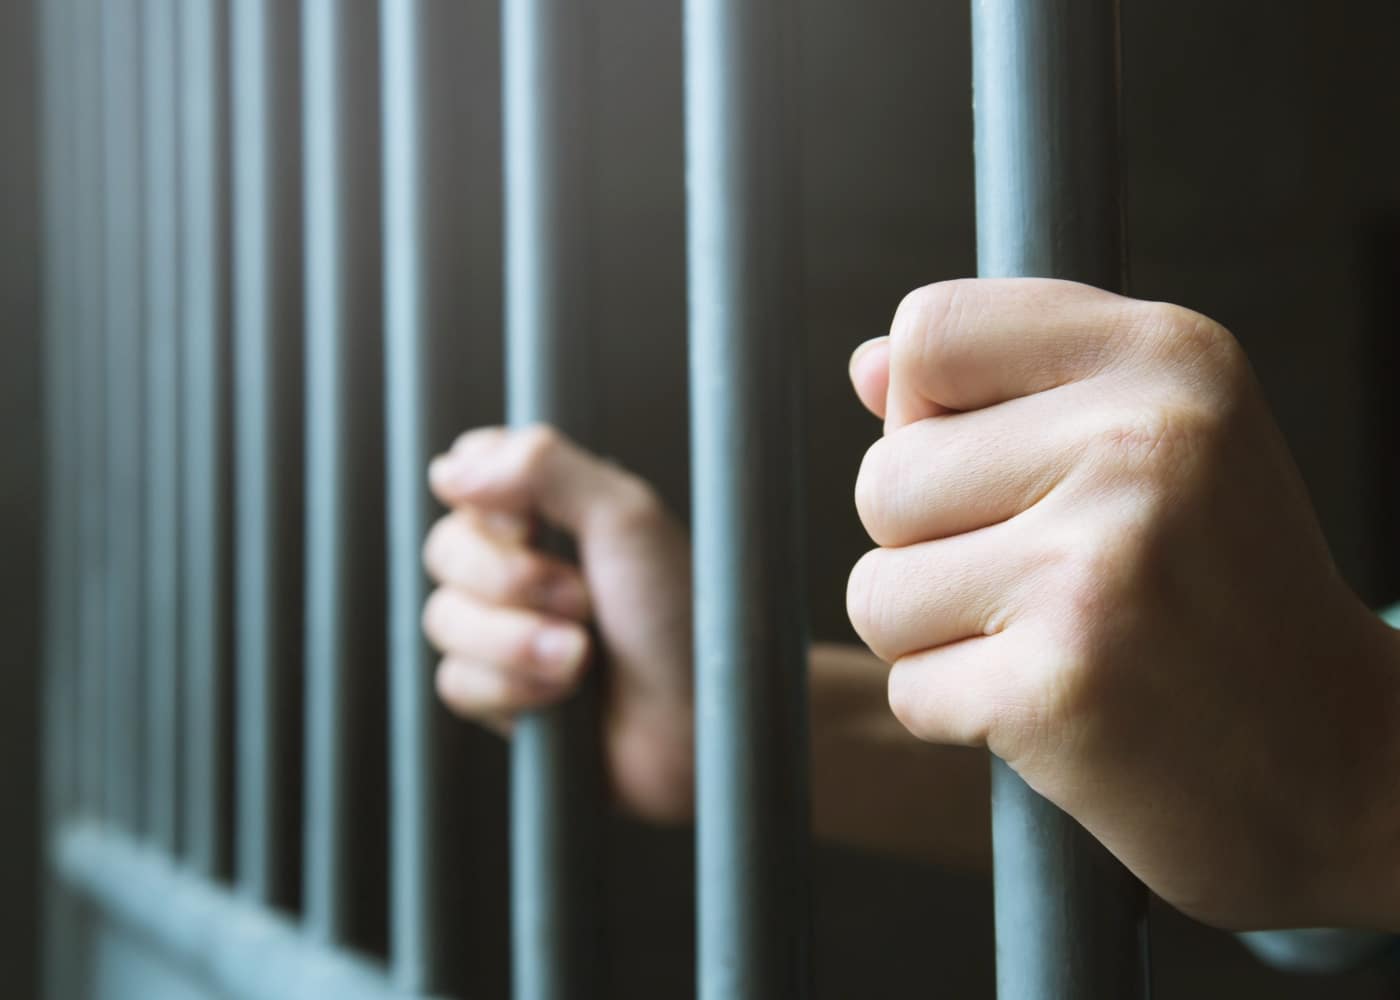 Dictan 20 años de prisión para hombre acusado de violar una menor — El Nacional